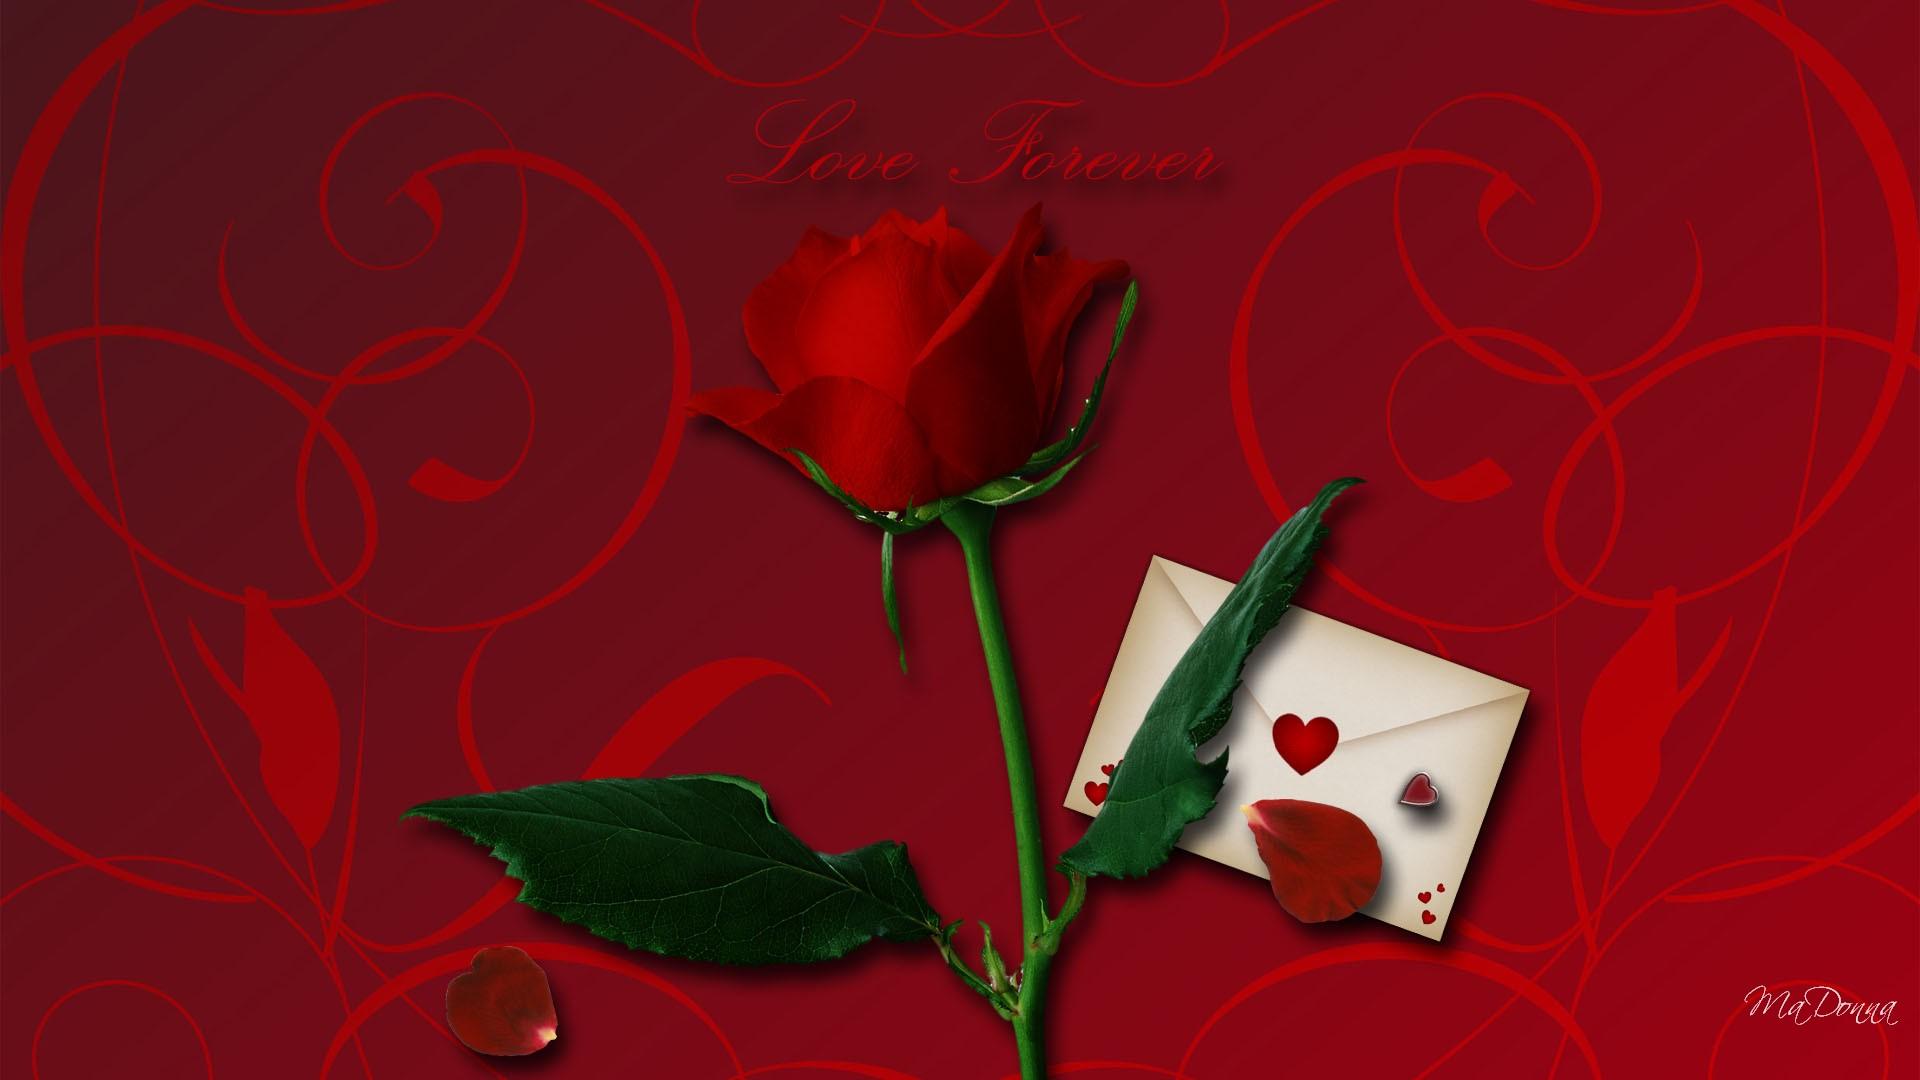 Love Forever - Garden Roses , HD Wallpaper & Backgrounds